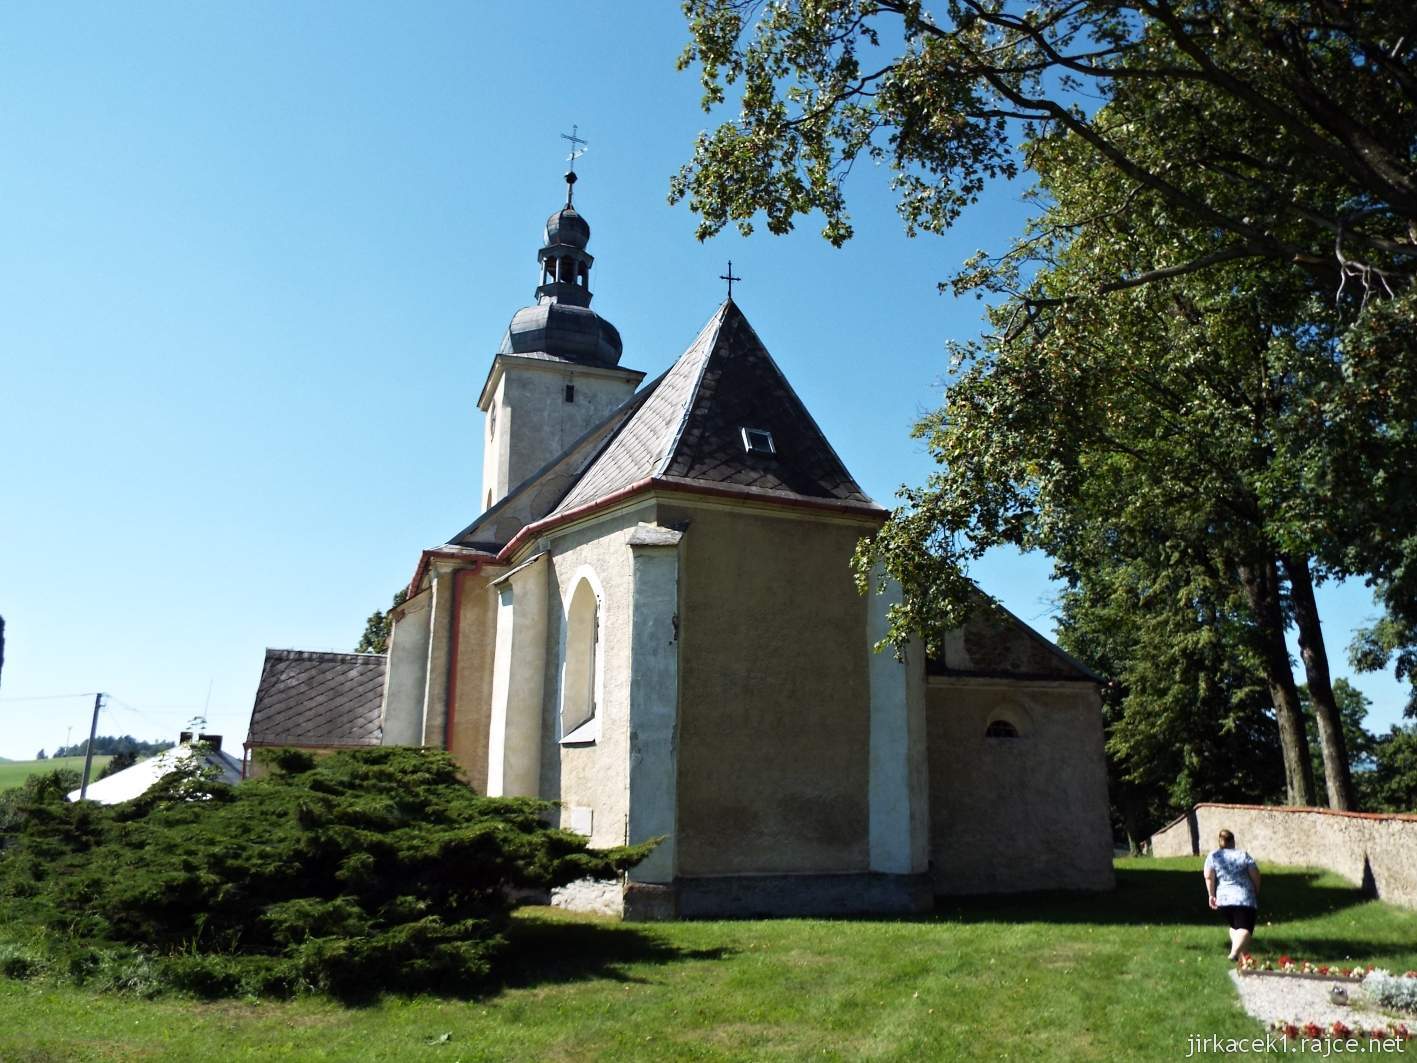 Razová - kostel sv. Michala - zadní pohled